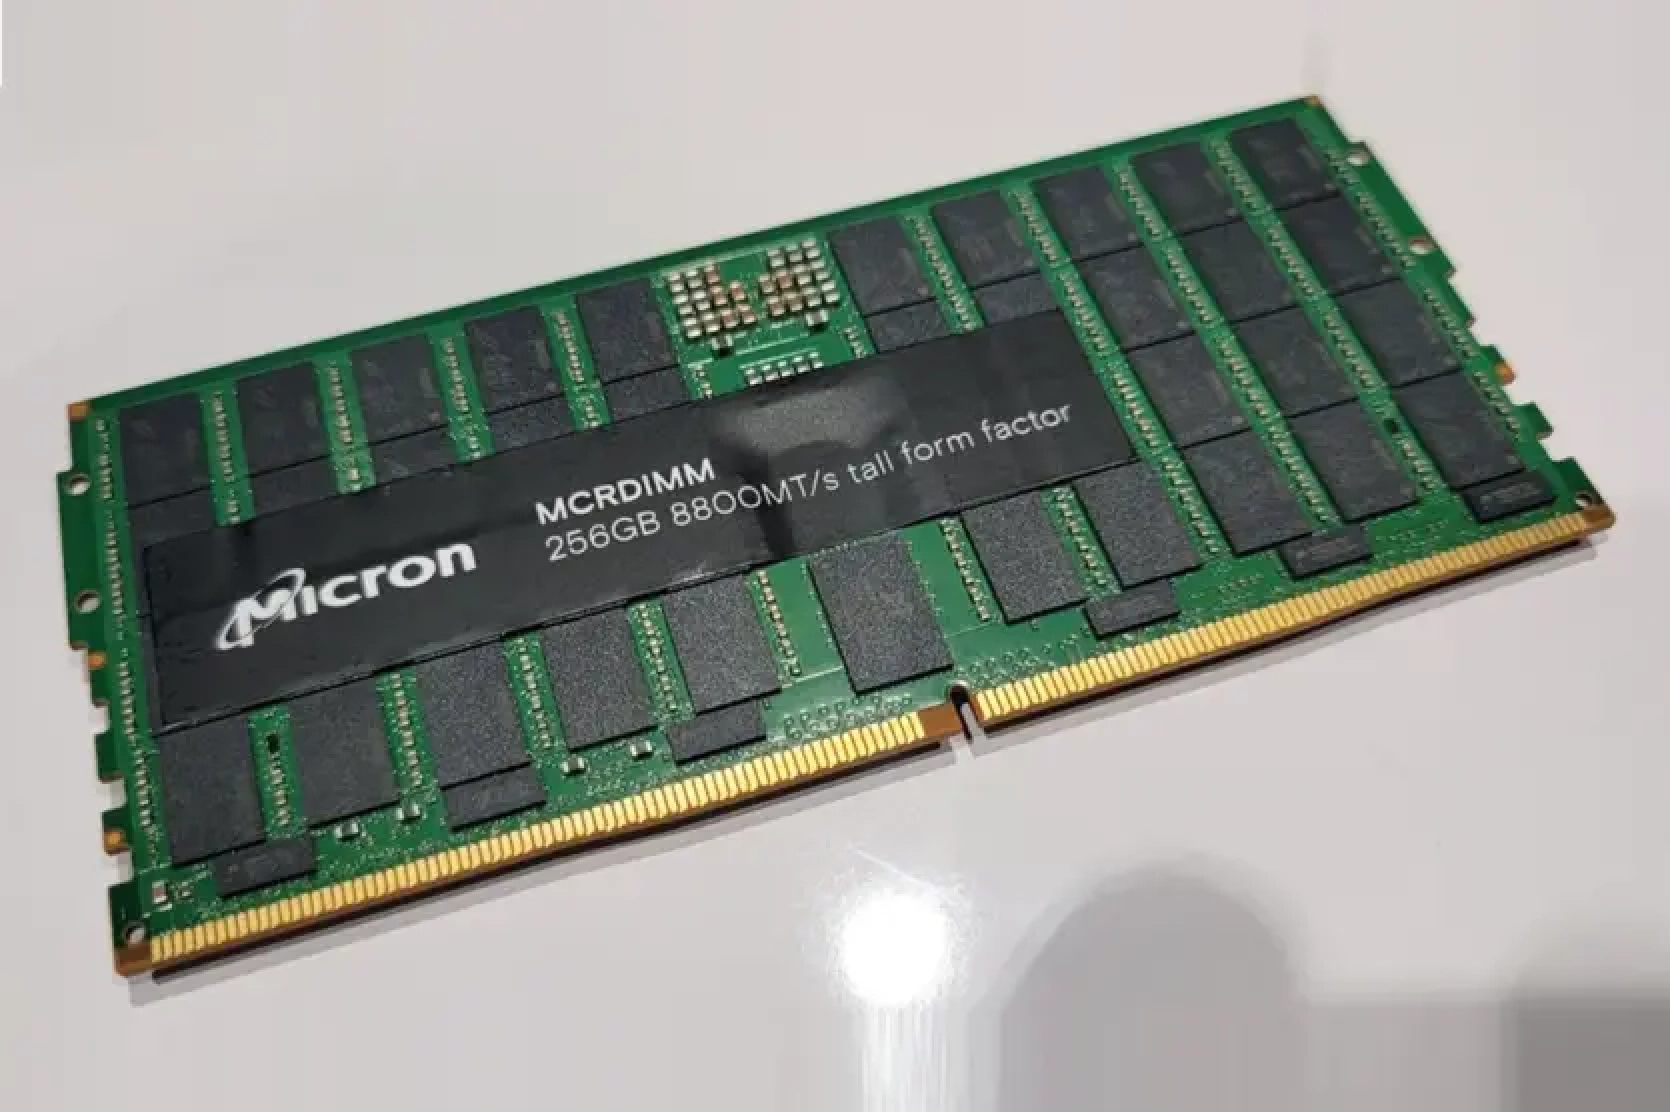 Micron introduced 256GB DDR5-8800 RAM modules